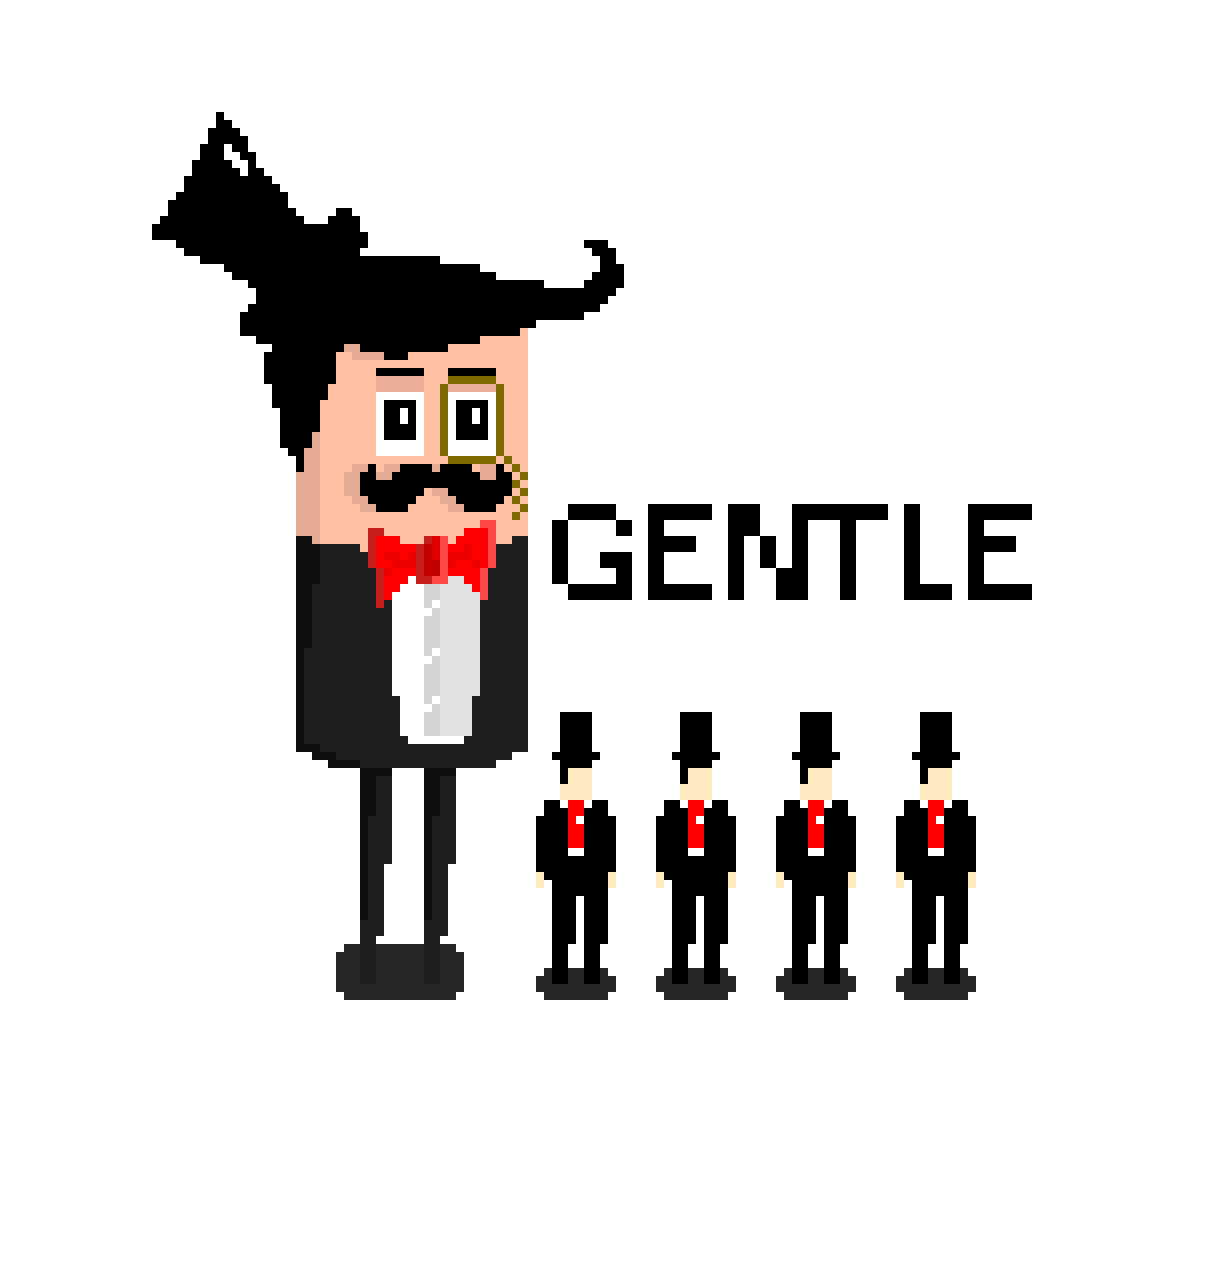 gentle.png